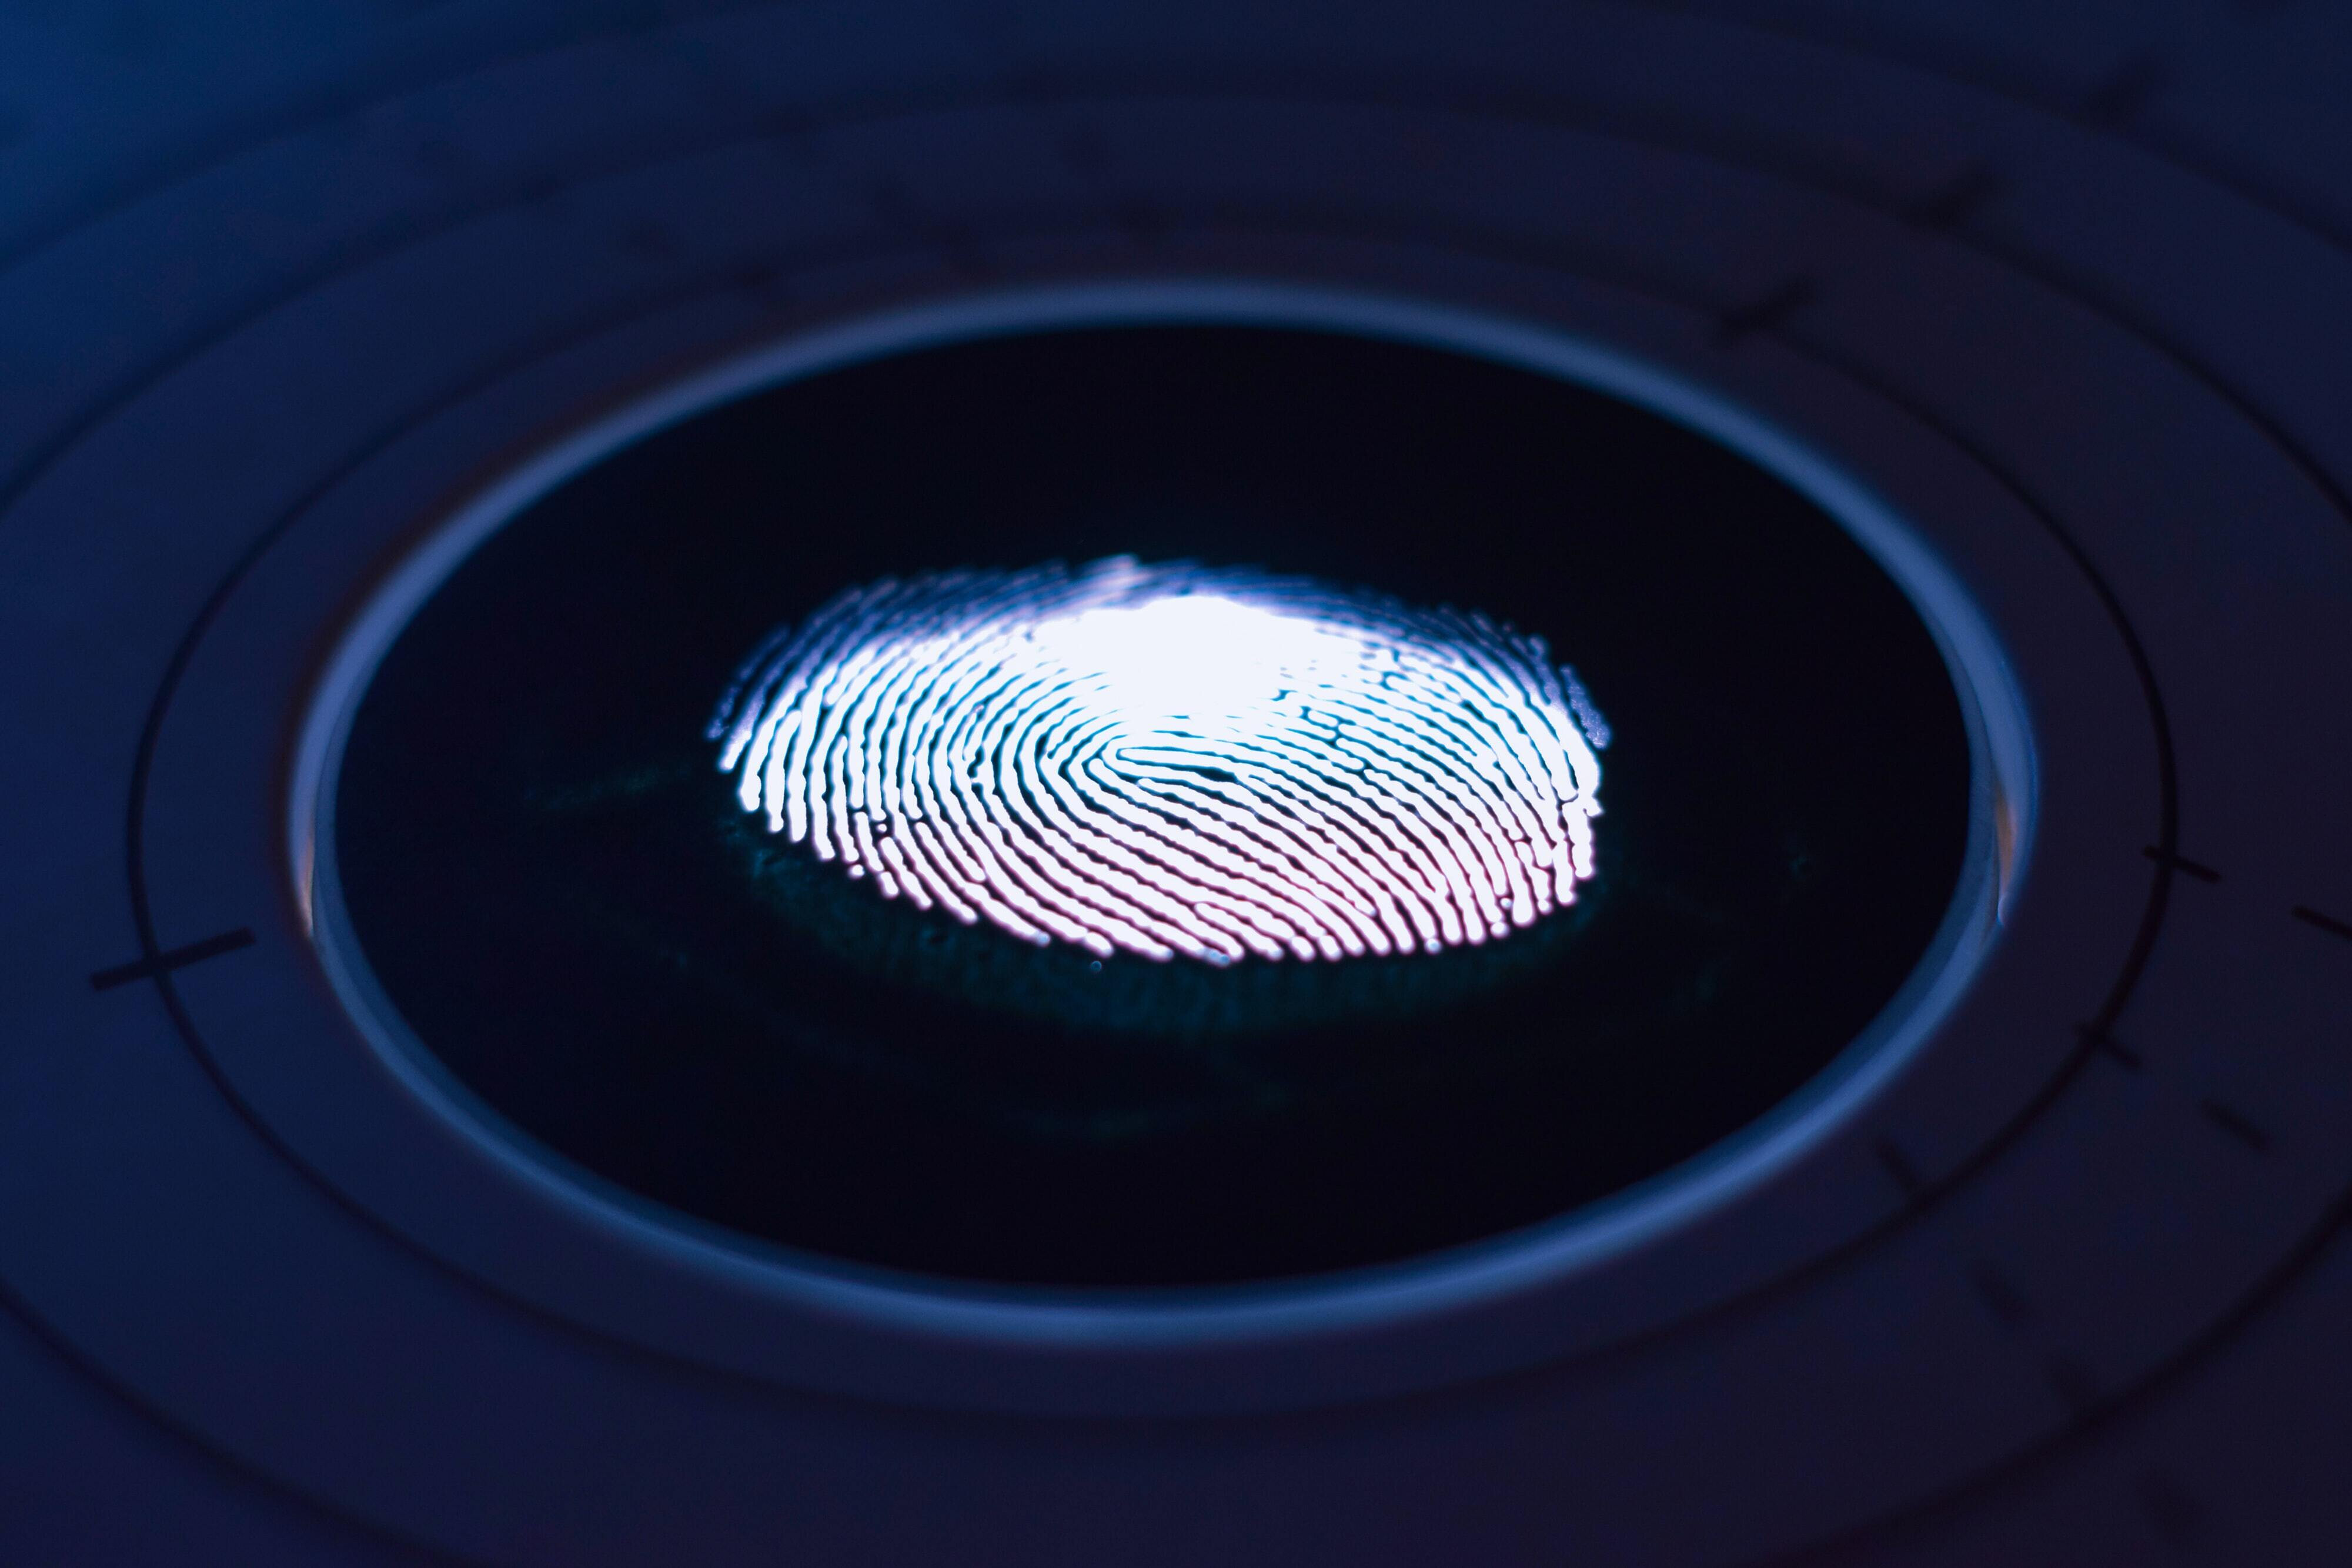 Das GM-Patent reinigt Fingerabdrücke, Fett und Öl selbsttätig von einem Touchscreen – Patent enthüllt System, mit dem Touchscreens Fingerabdrücke und mehr selbstreinigen können